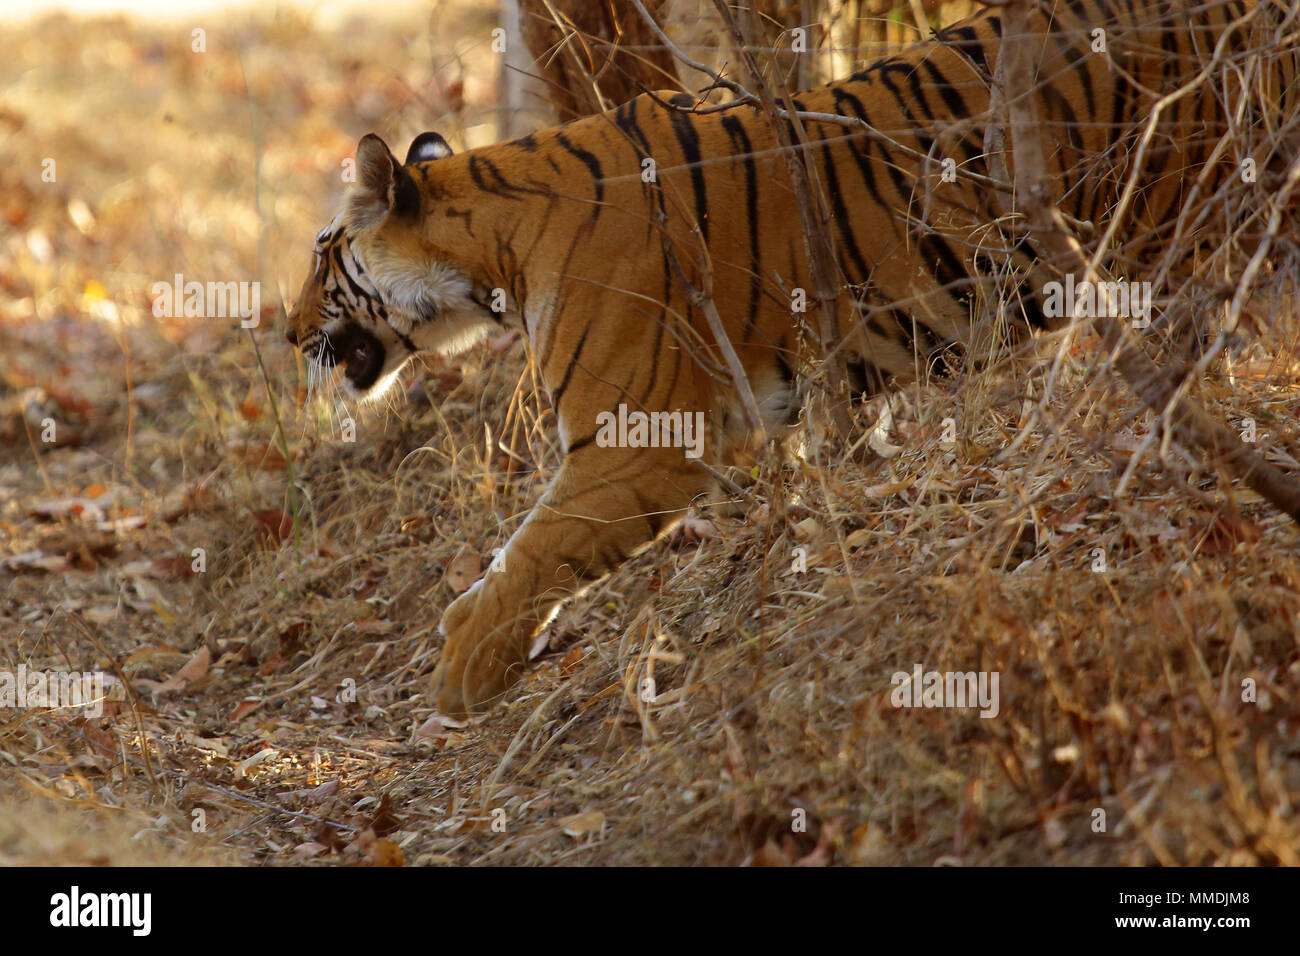 Tiger reserve, Satpura in India Stock Photo